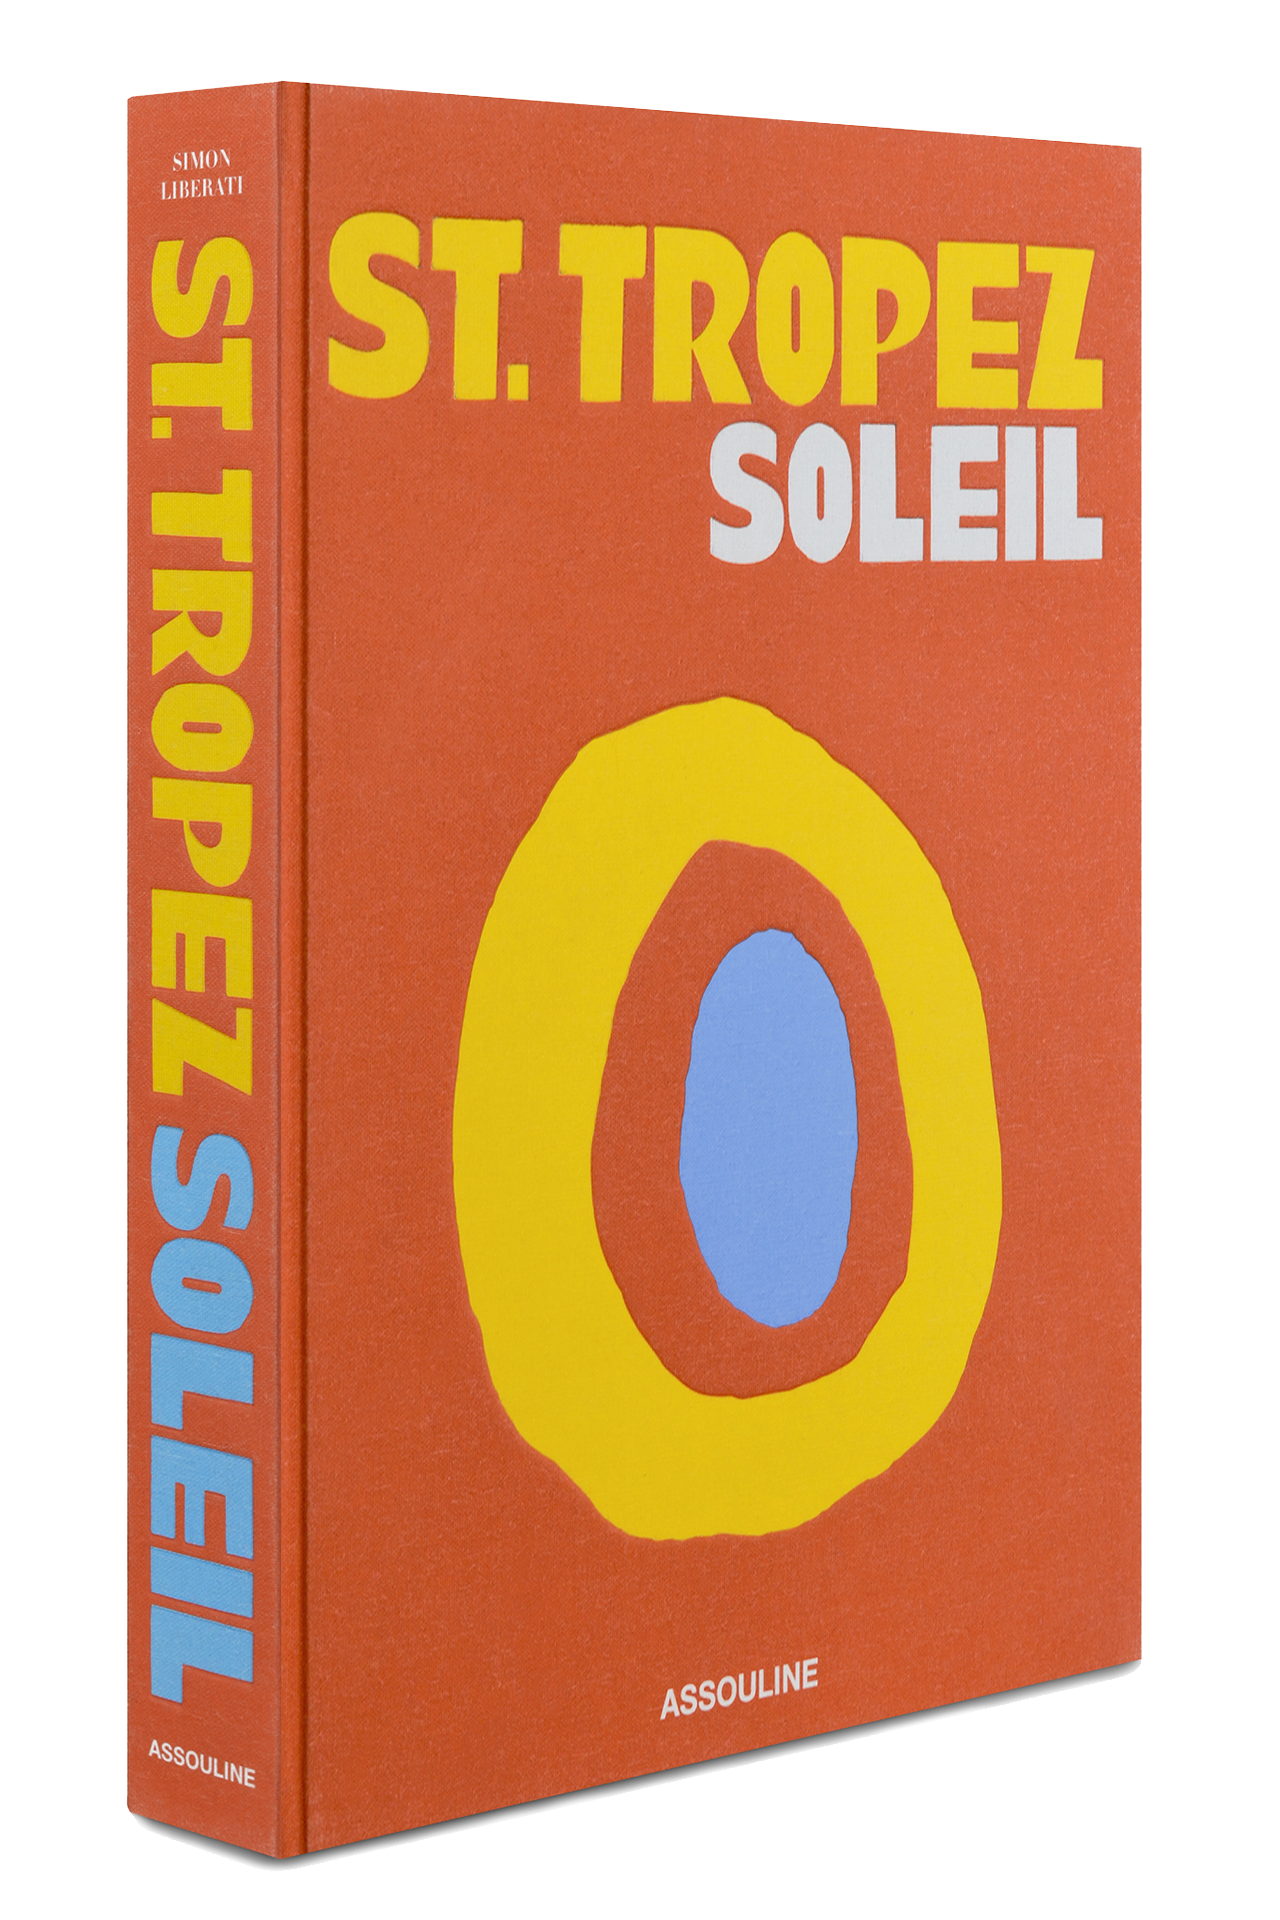 St. Tropez Soleil (4611022061683)